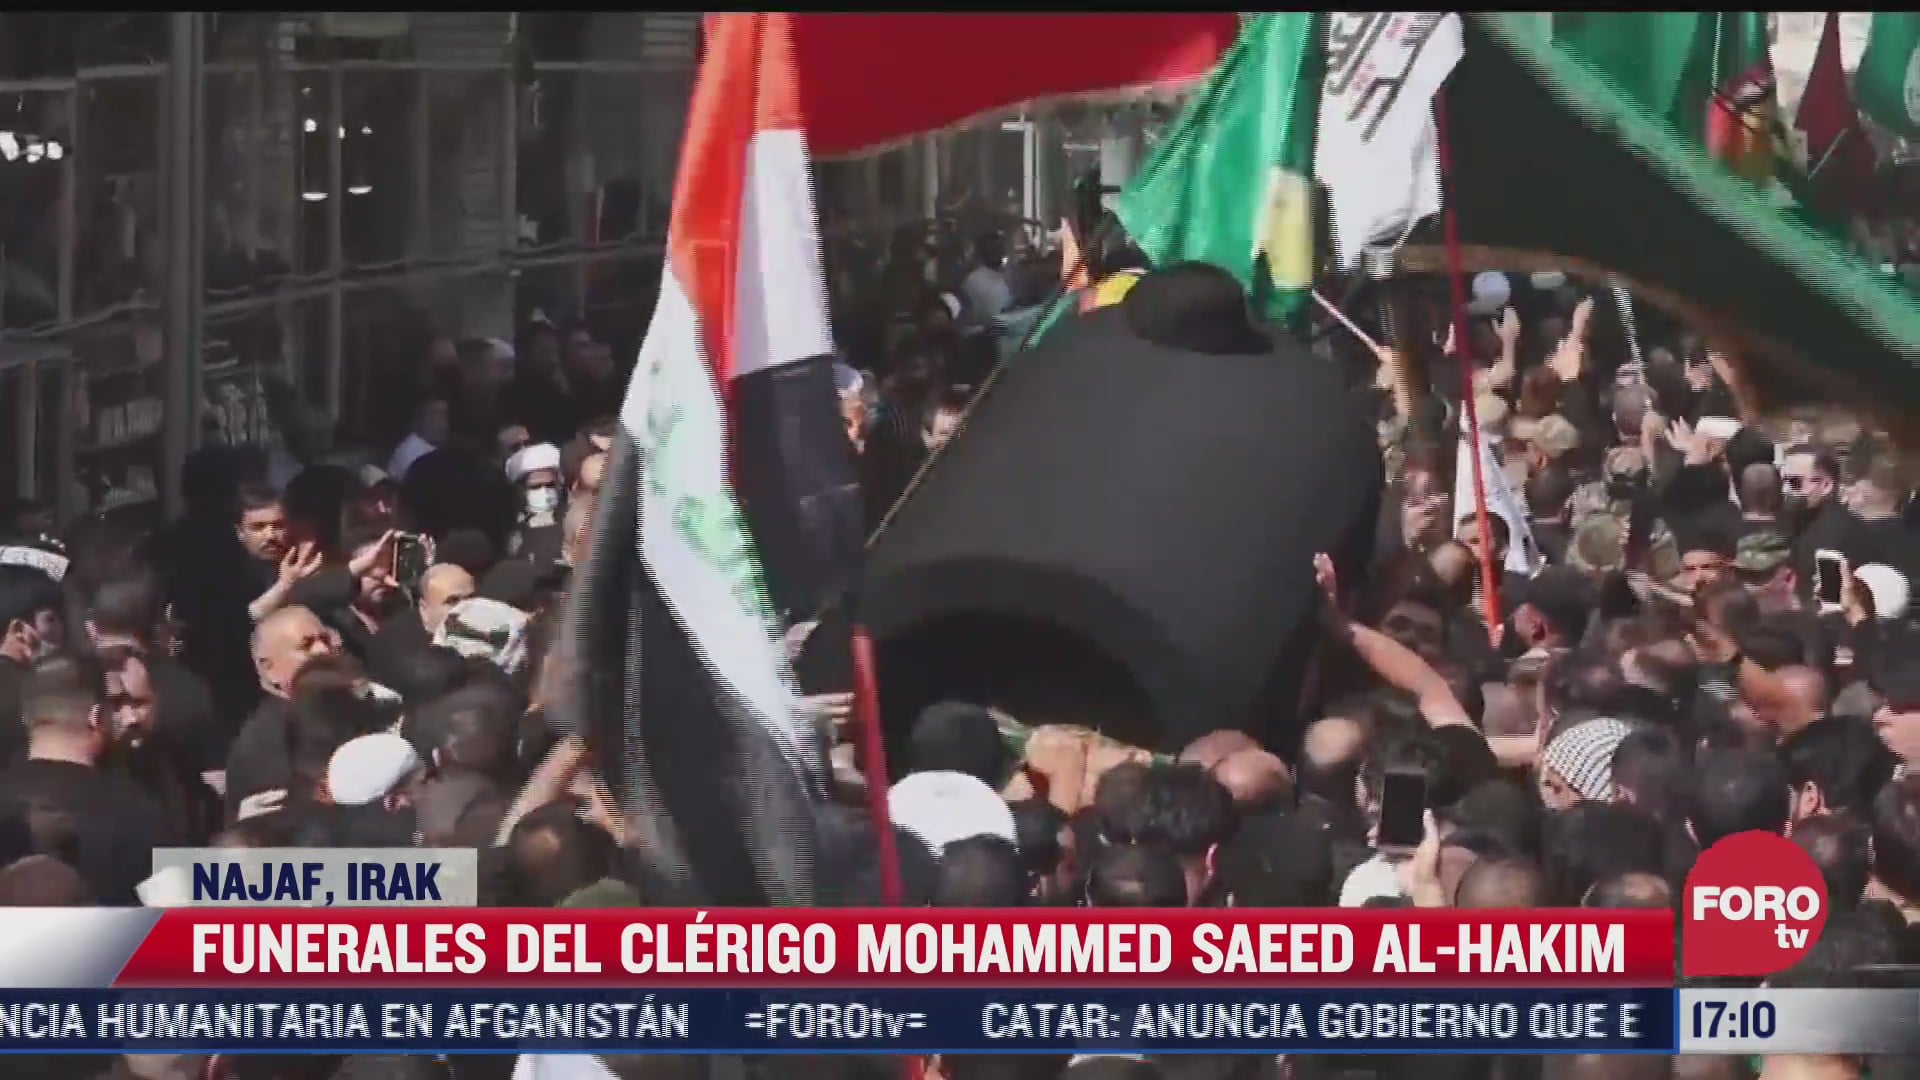 miles de personas asisten a funeral de clerigo musulman en irak